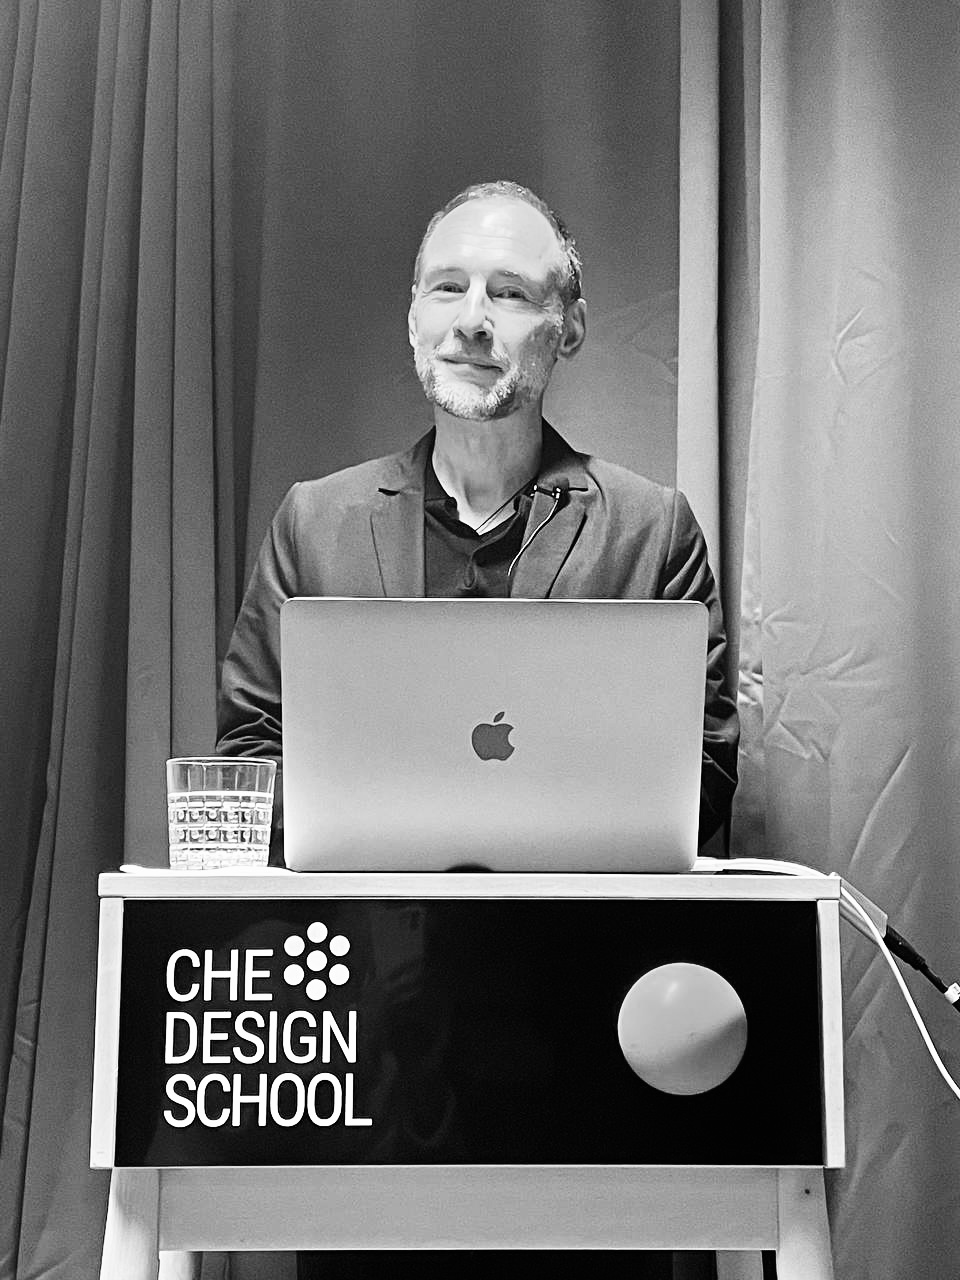 Анатолий Мосин провел лекцию специально для Che Design School.